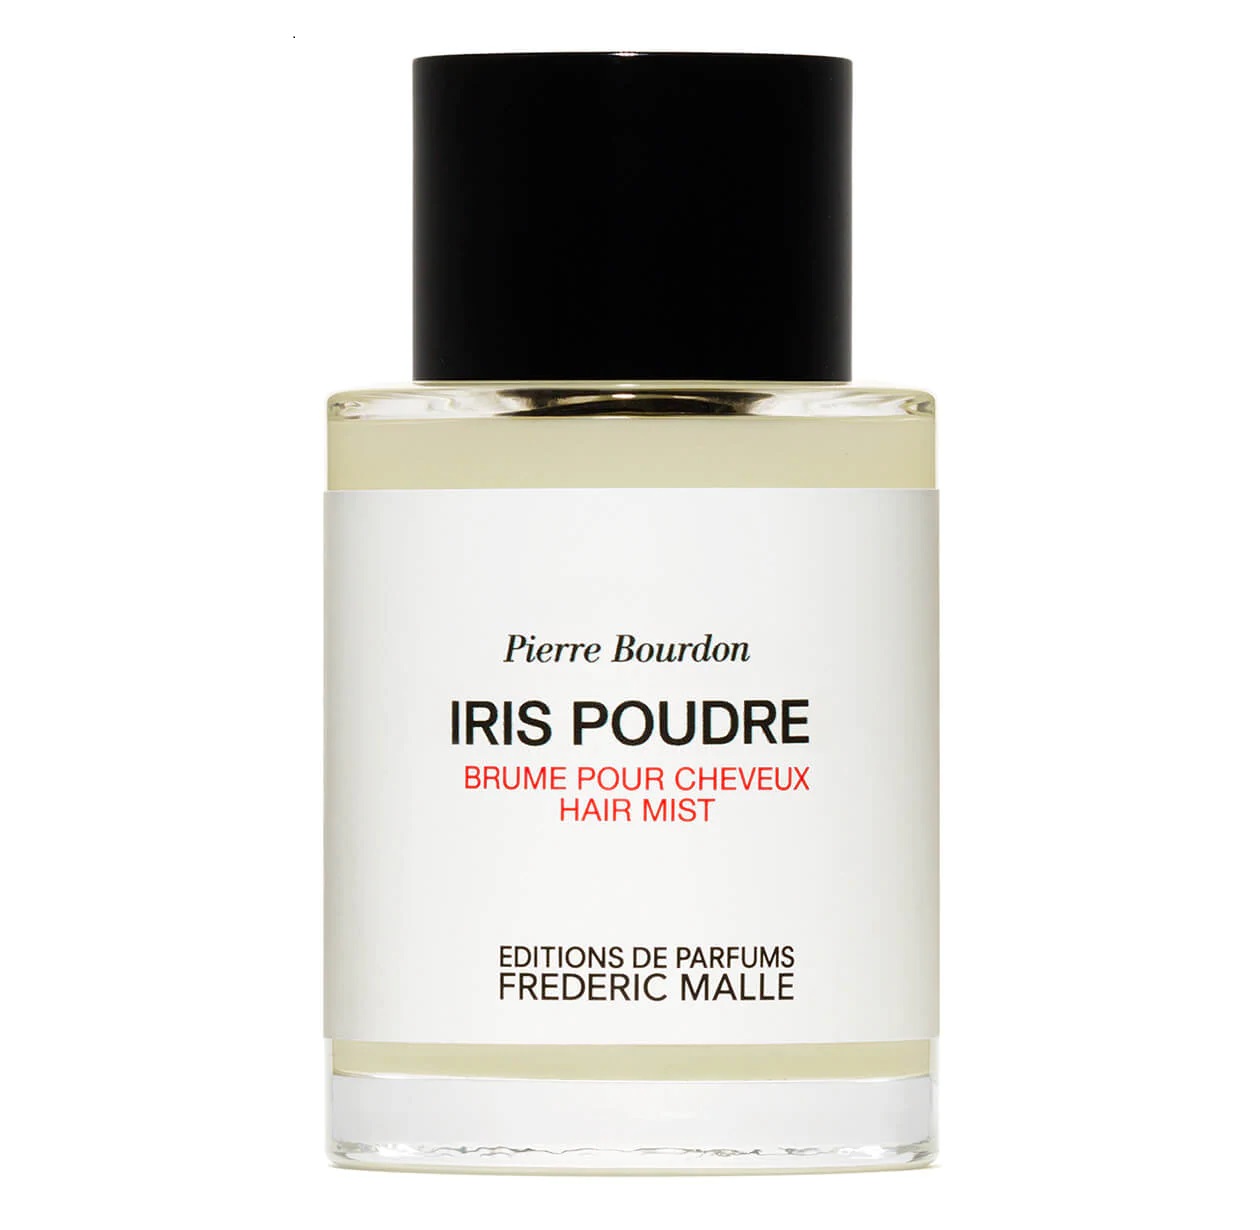 Iris Poudre (Brume pour Cheveux / Hair mist)